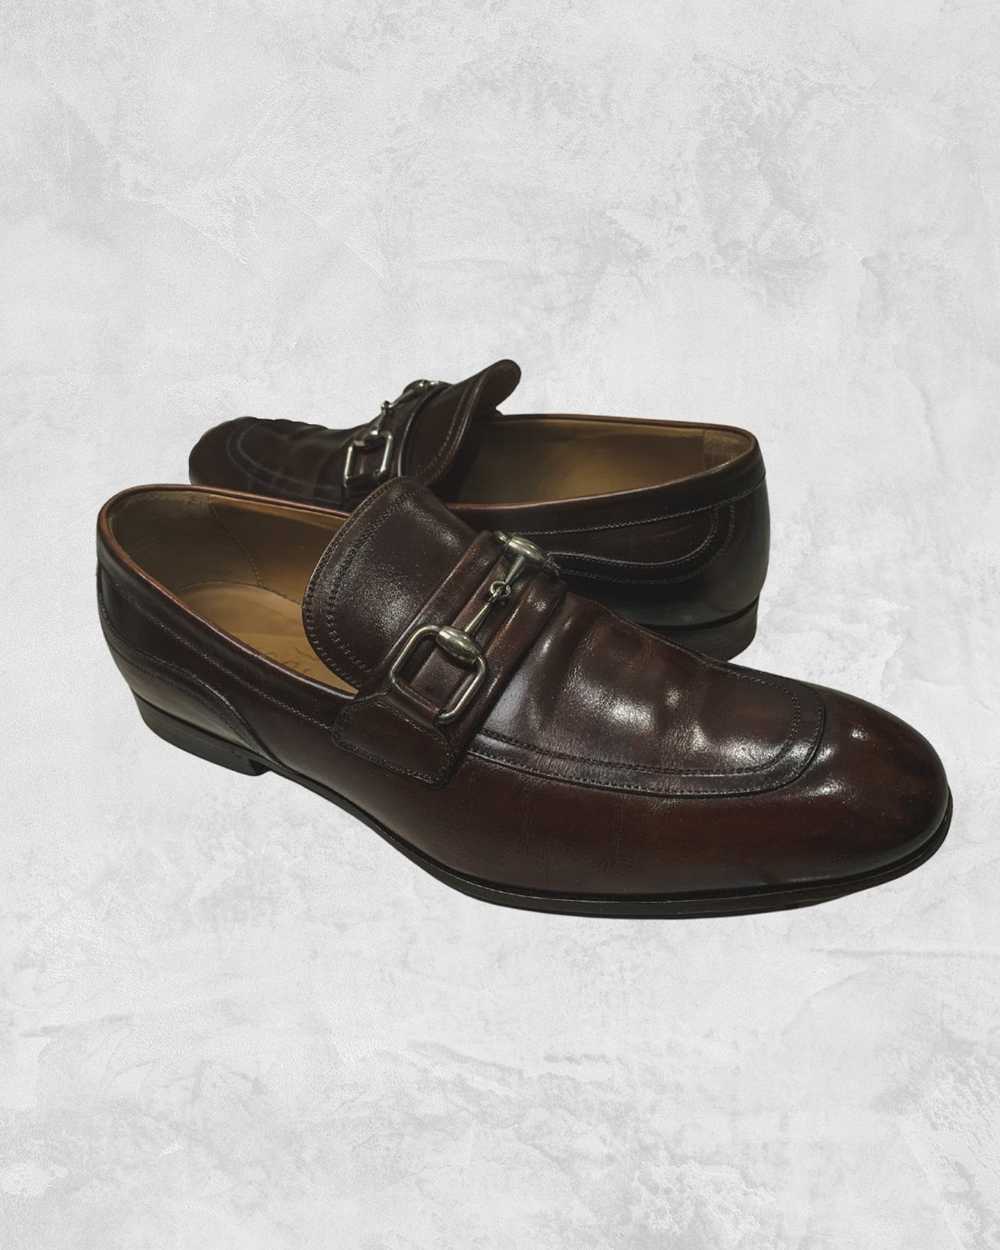 Gucci Horsebit Jordaan Low Heel Loafers - image 1